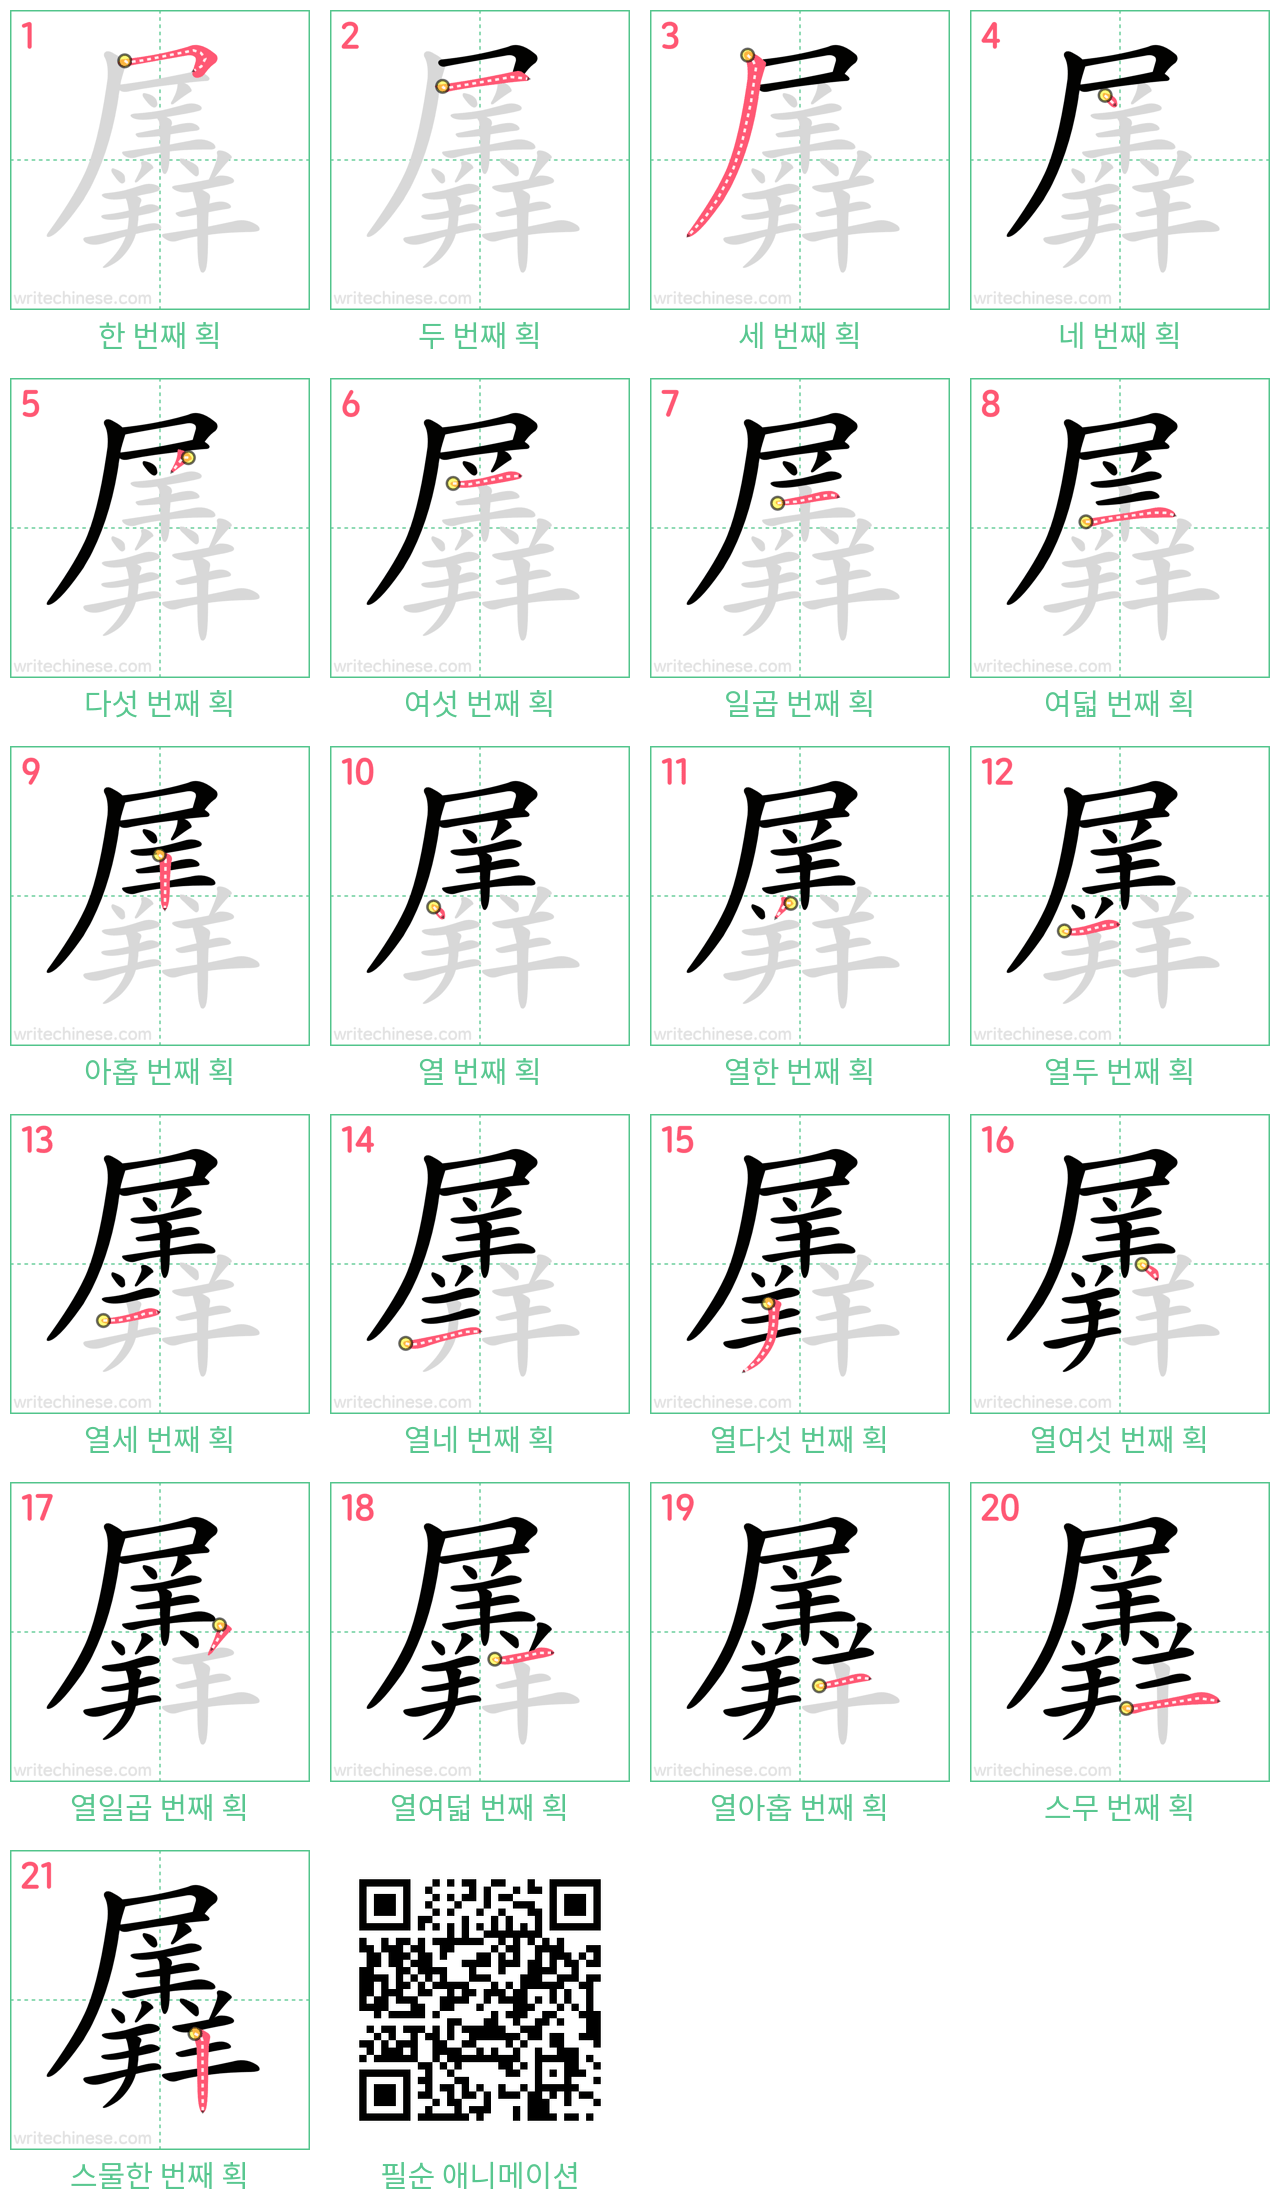 羼 step-by-step stroke order diagrams